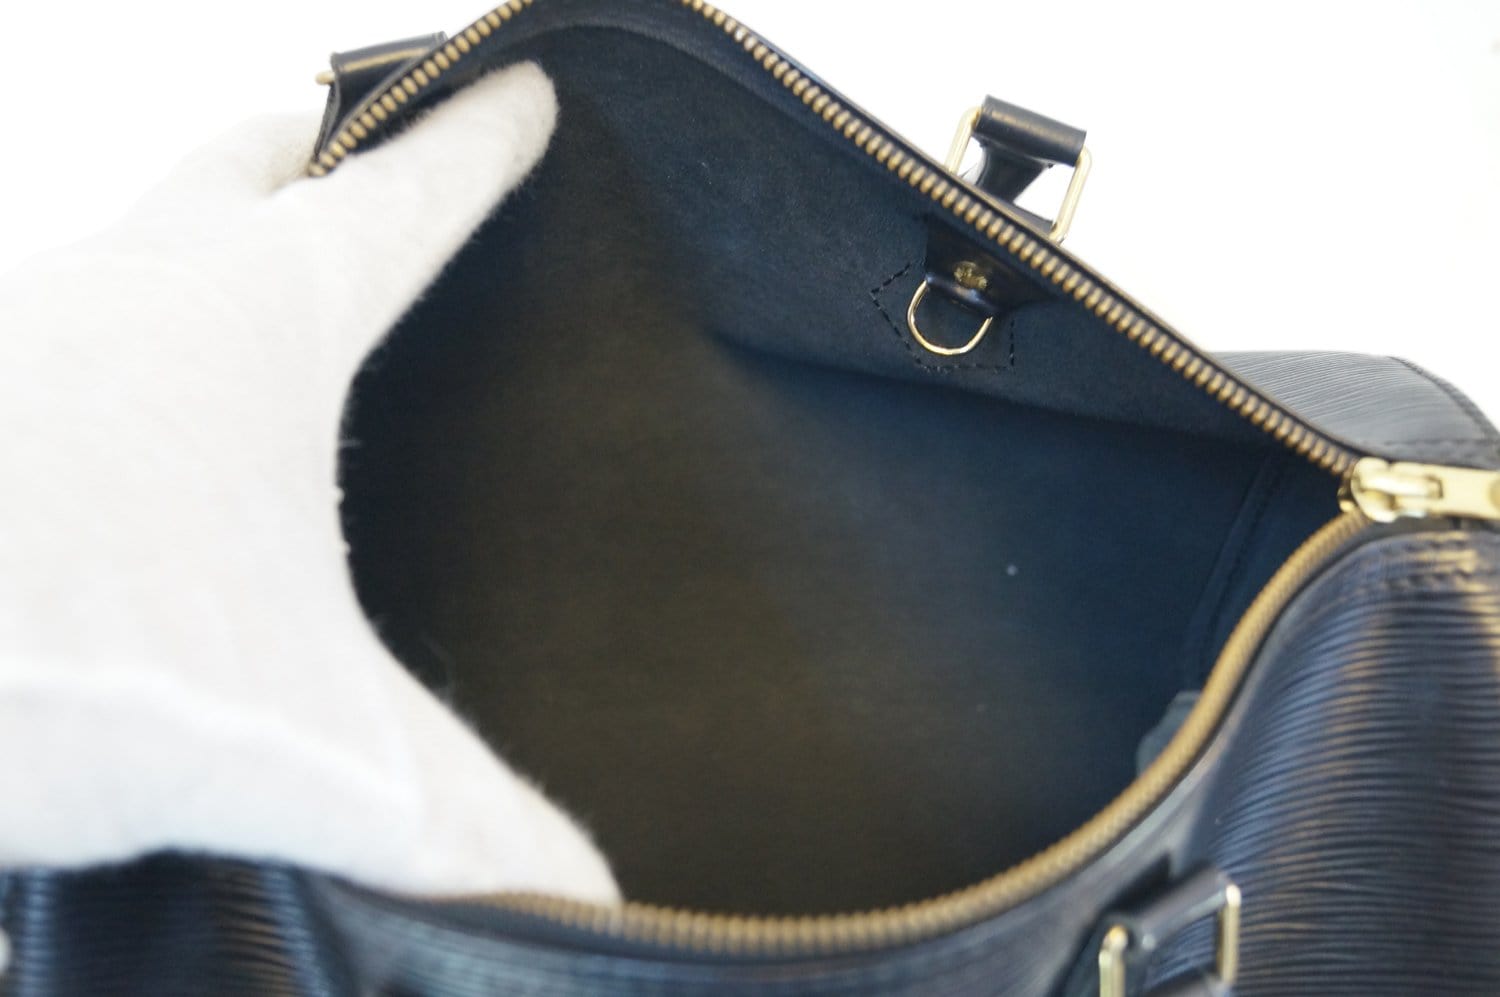 Louis Vuitton Black Epi Leather Speedy 30 Bag at 1stDibs